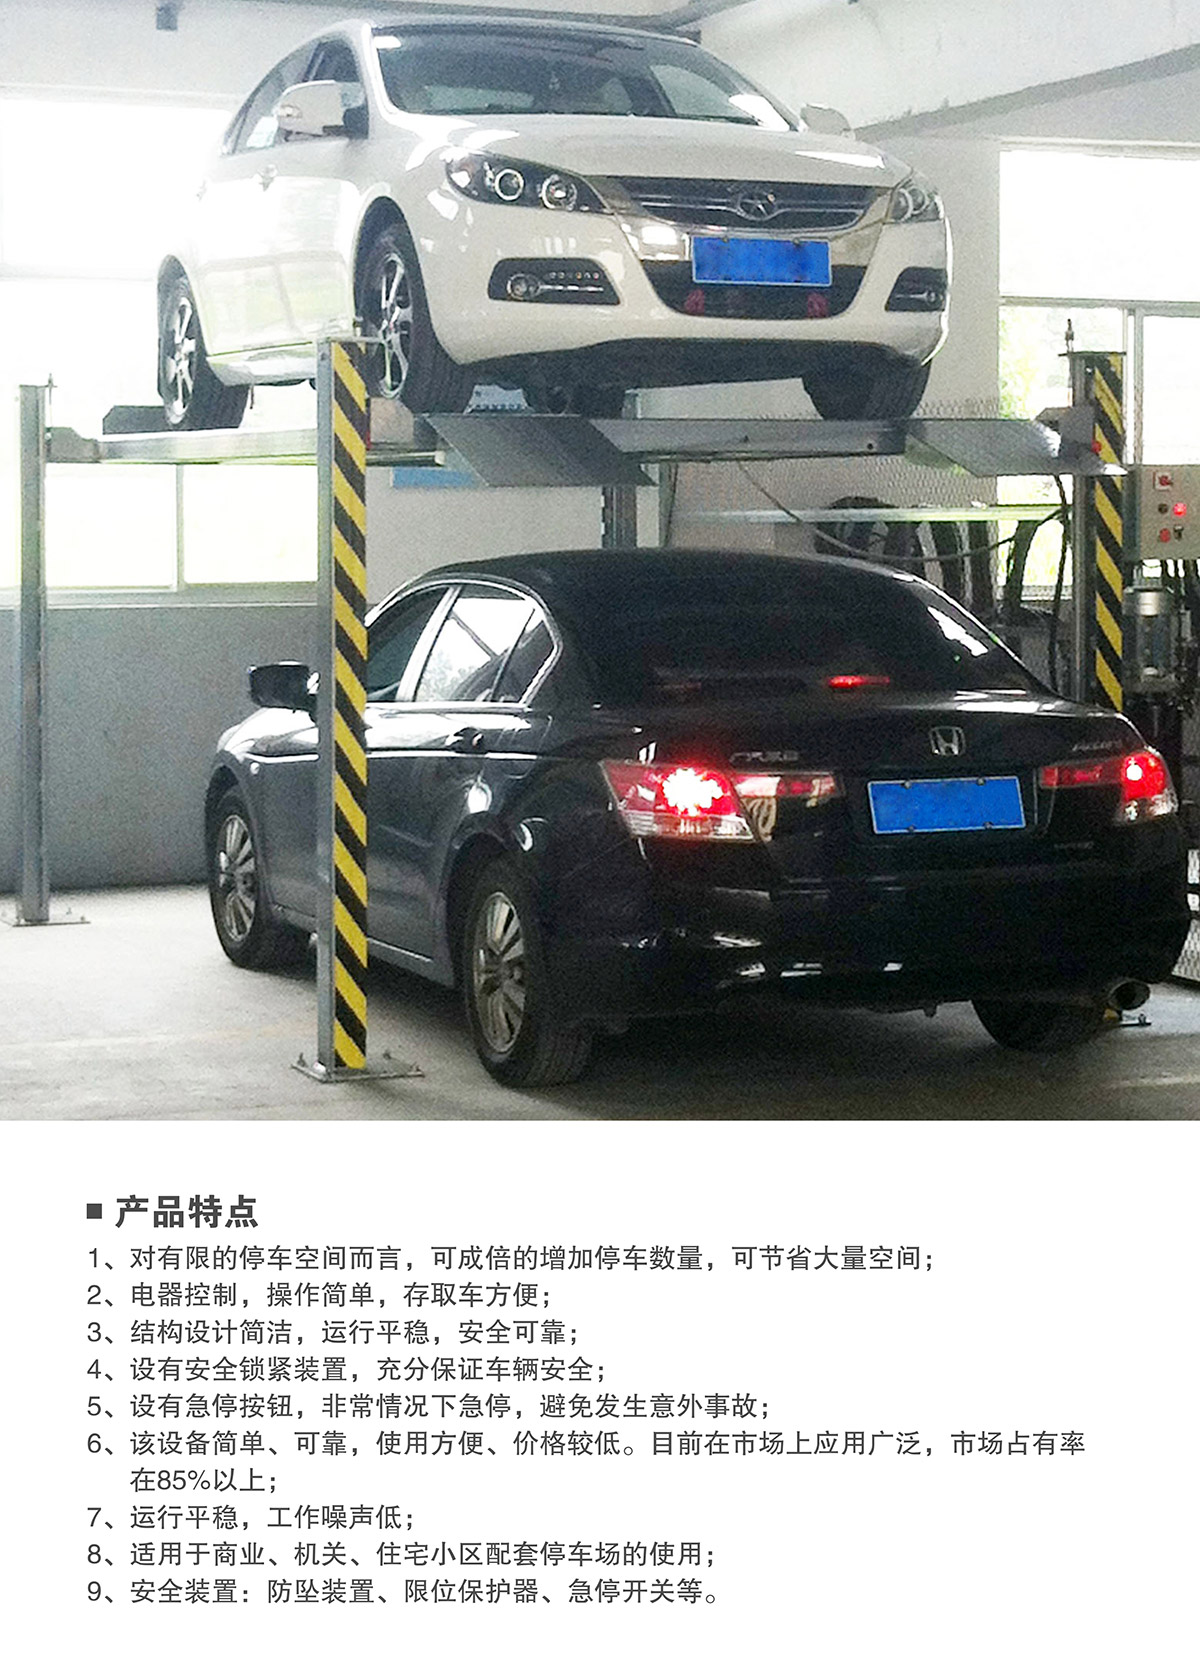 贵州四柱简易升降立体停车设备产品特点.jpg